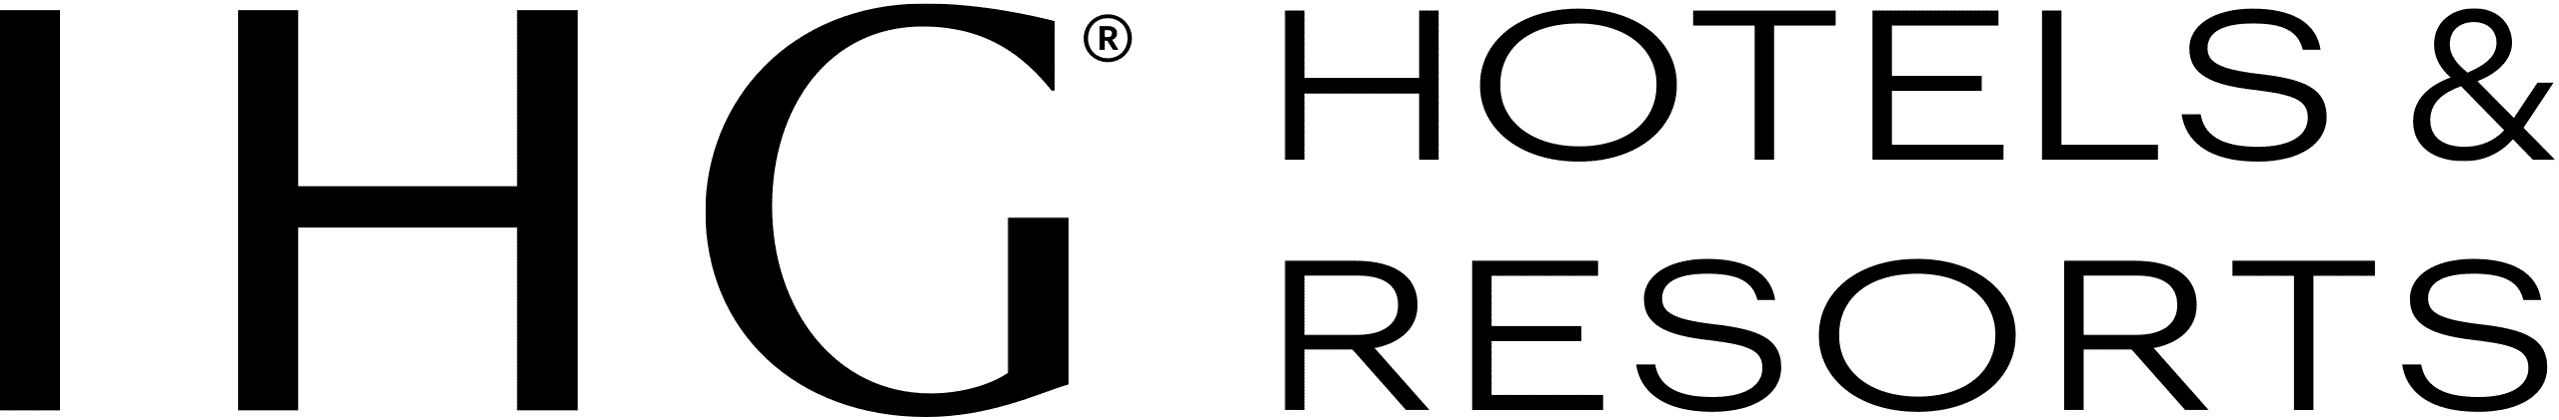 IHG_Hotels_&_Resorts_logo.svg